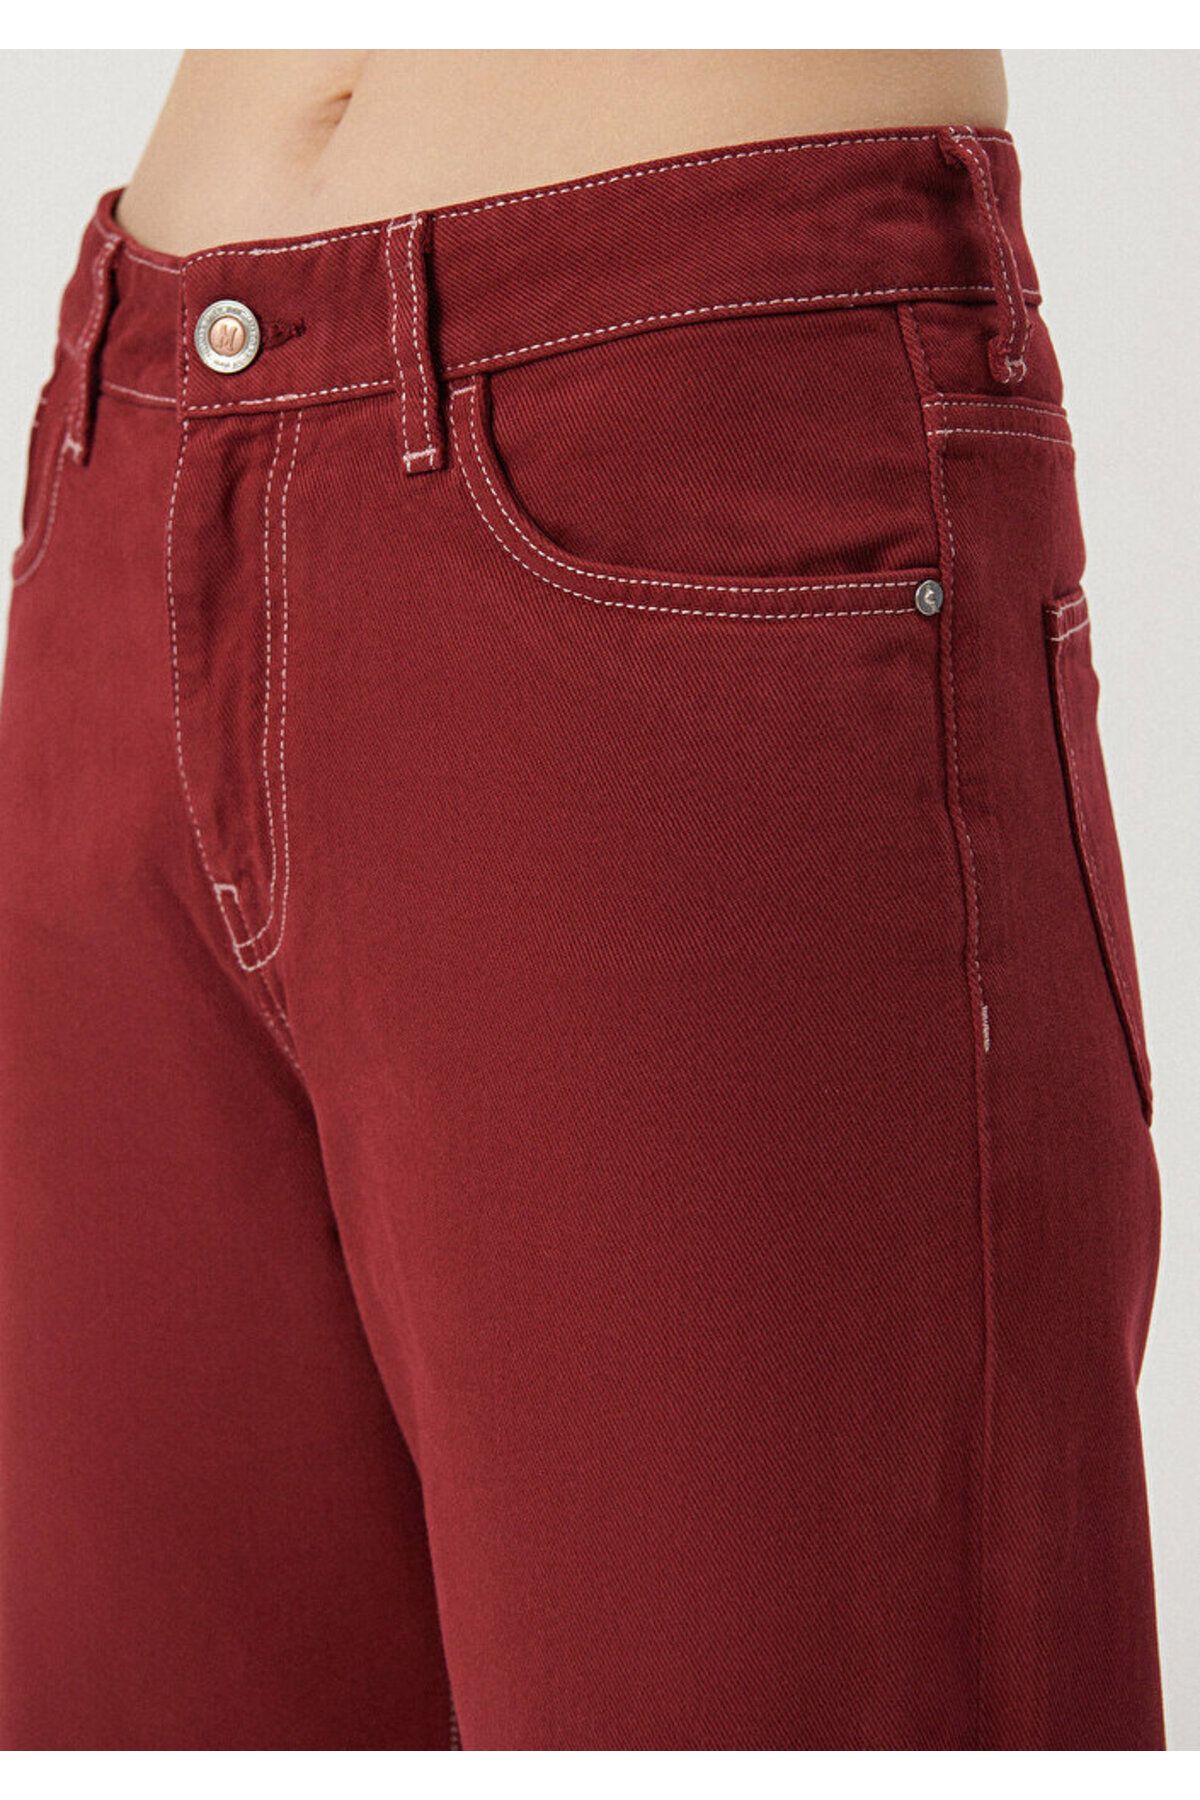 Mavi Malibu Claret Red College Jean Trousers 1010152-85279